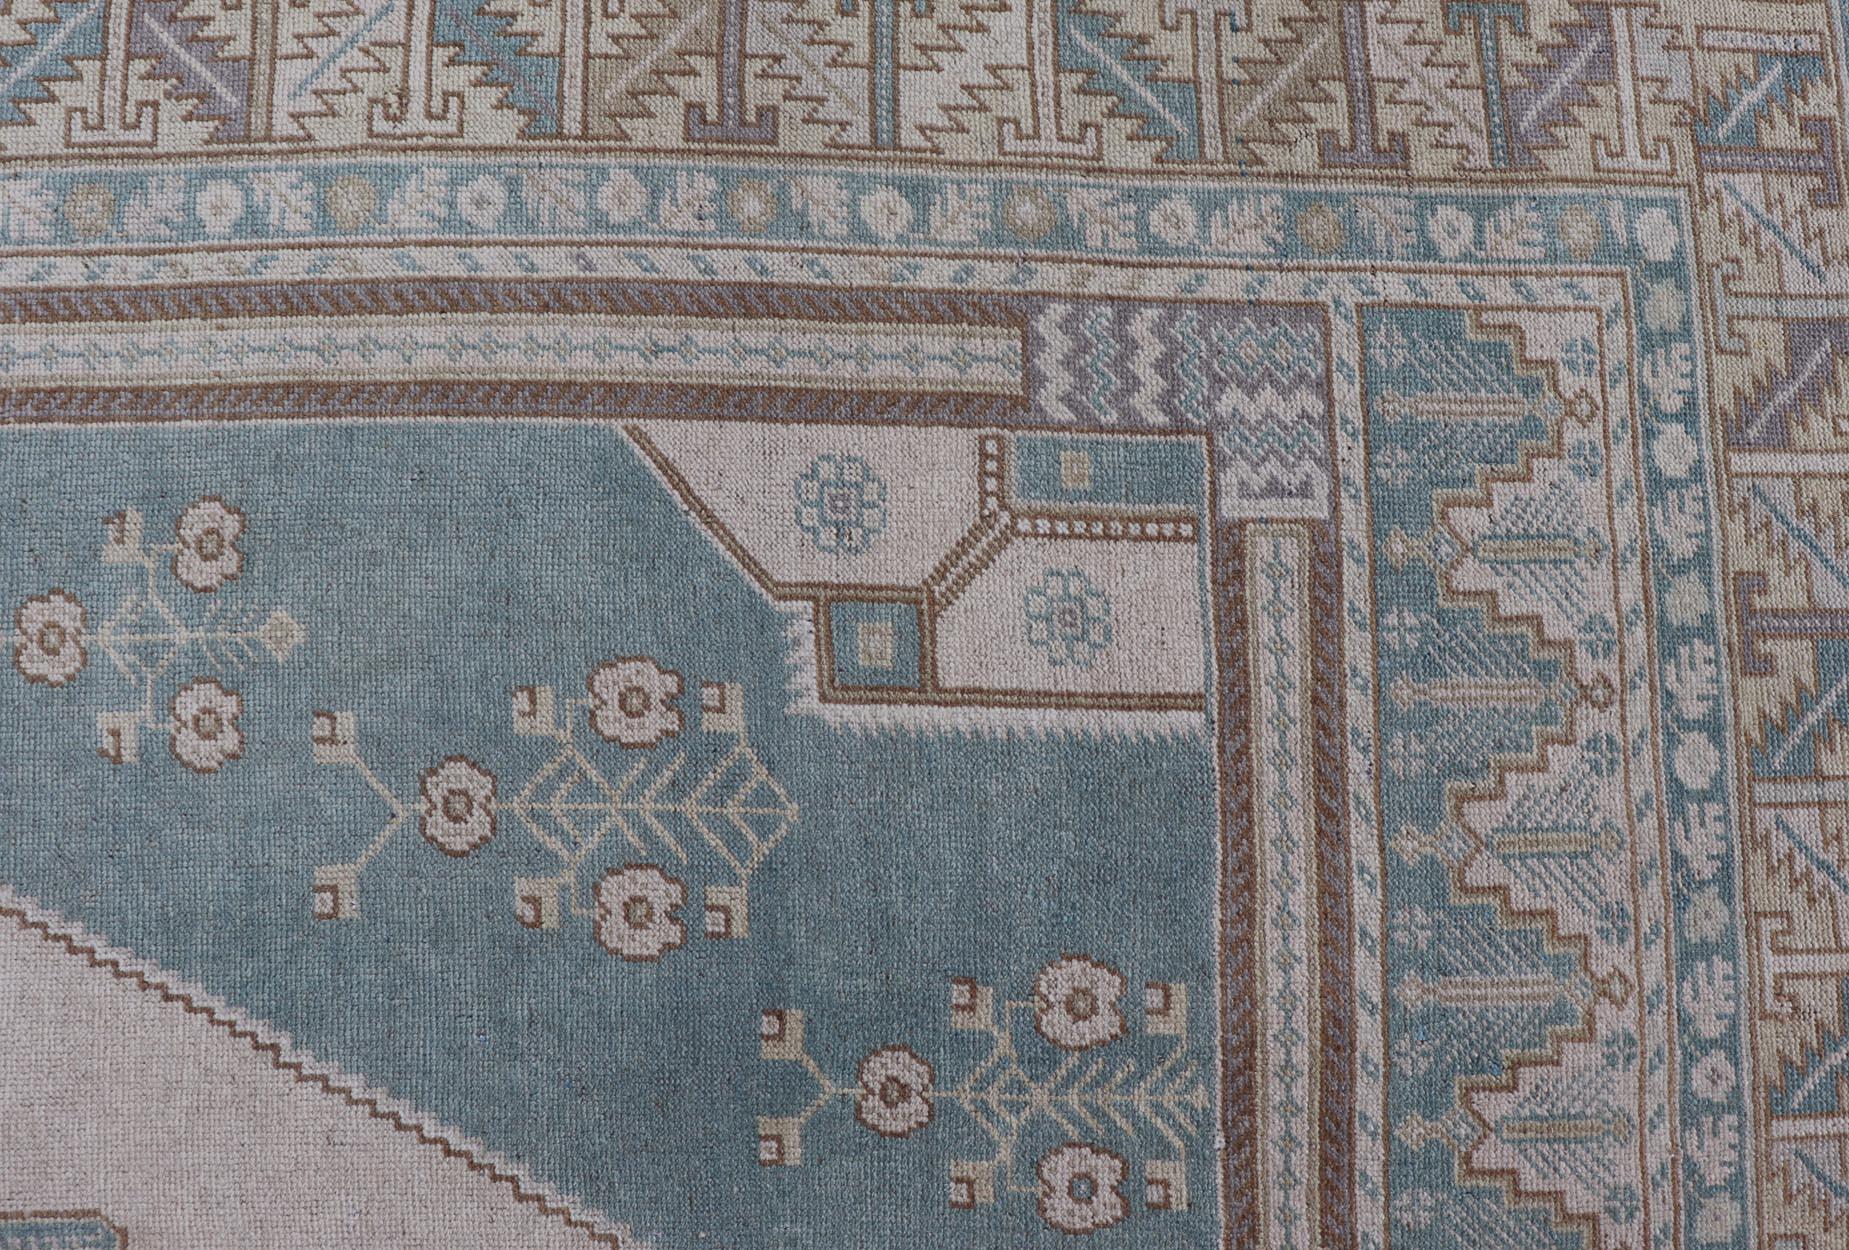 Faded Vintage türkischer Oushak-Teppich mit zentralem Medaillon in Creme und Blau, 
Teppich TU-MTU-6011, Herkunftsland/Typ: Türkei / Oushak, um 1940

Dieser erhabene und bezaubernde Vintage-Teppich, ein wunderschöner Oushak-Teppich, der Mitte des